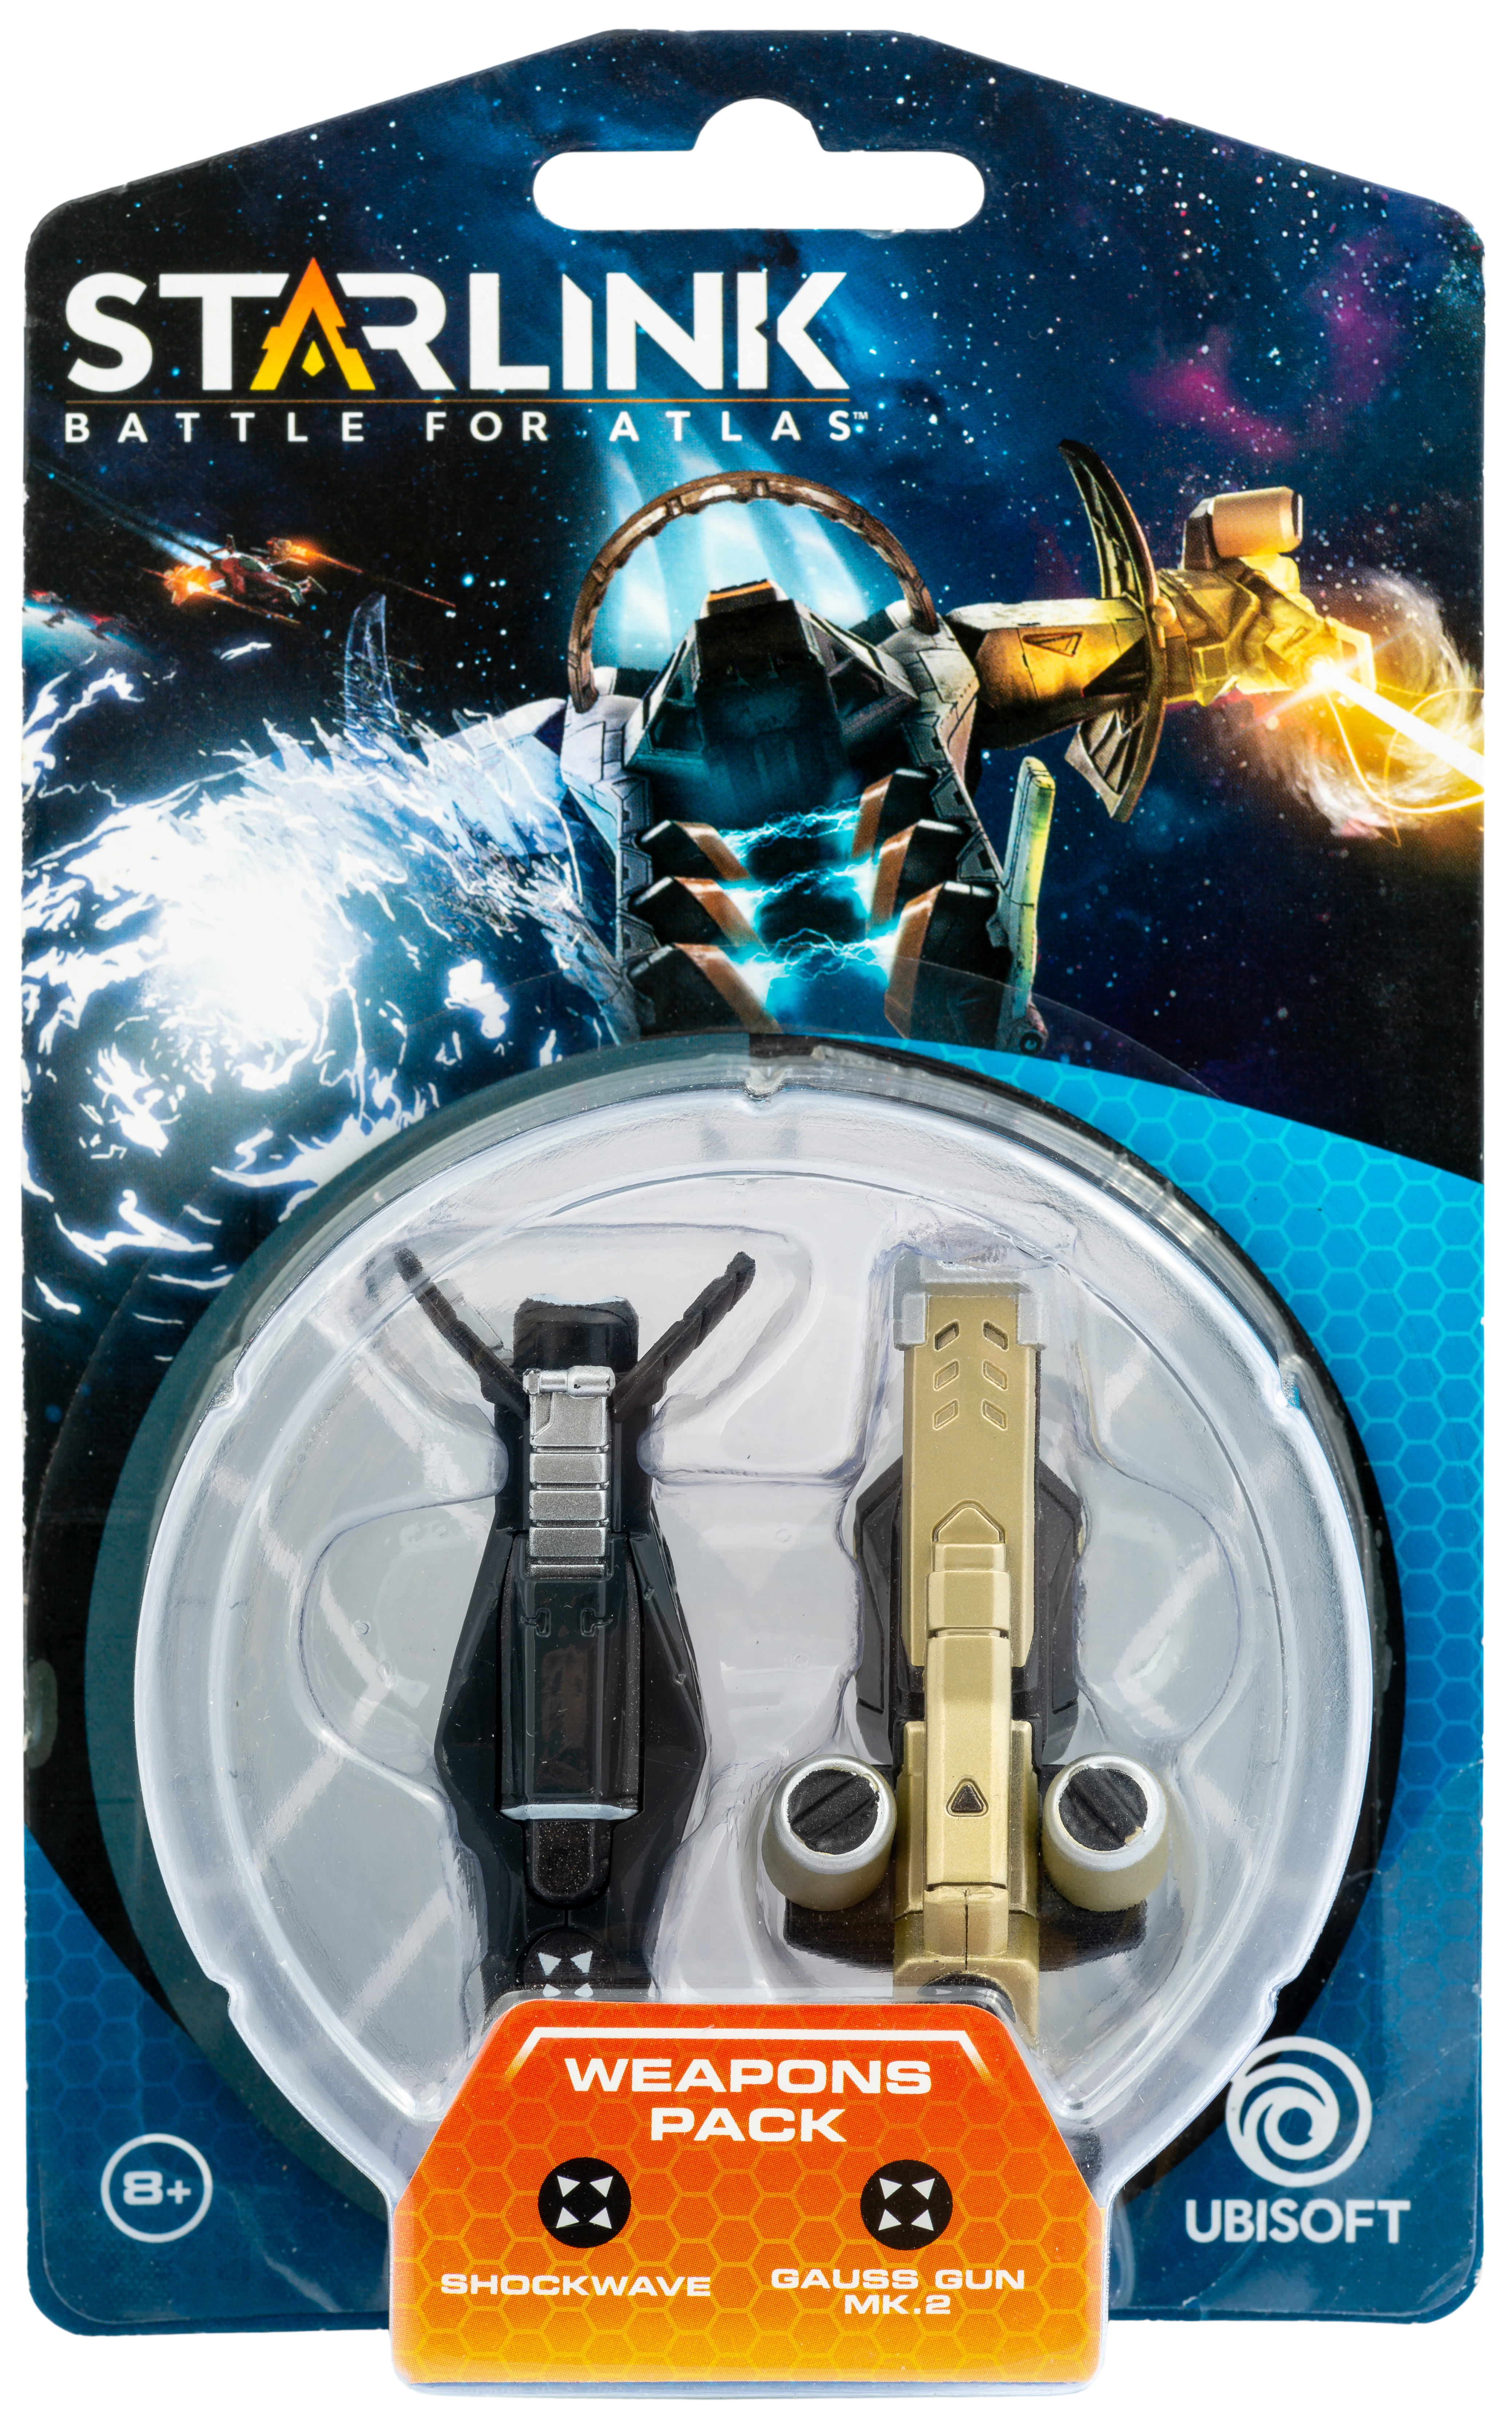 STARLINK TOYS Weapons + Shockwave Spielfigur Gun Pack Gauss MK.2